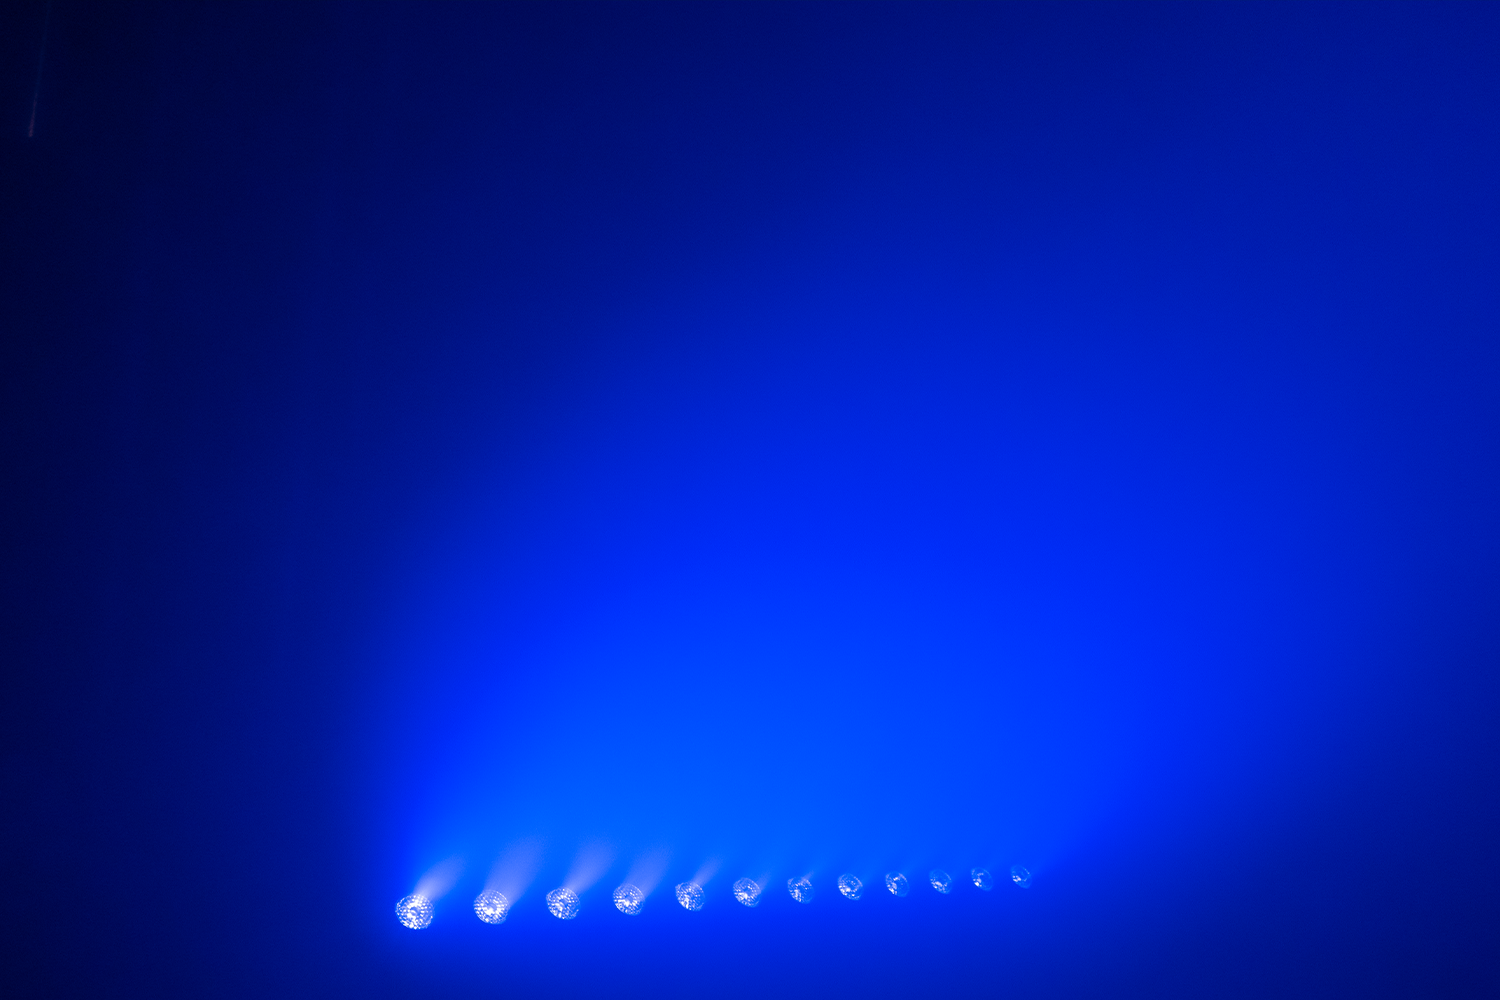 Event Lighting Effect Blue_PIXBAR12X12W 1500 x 1000 px